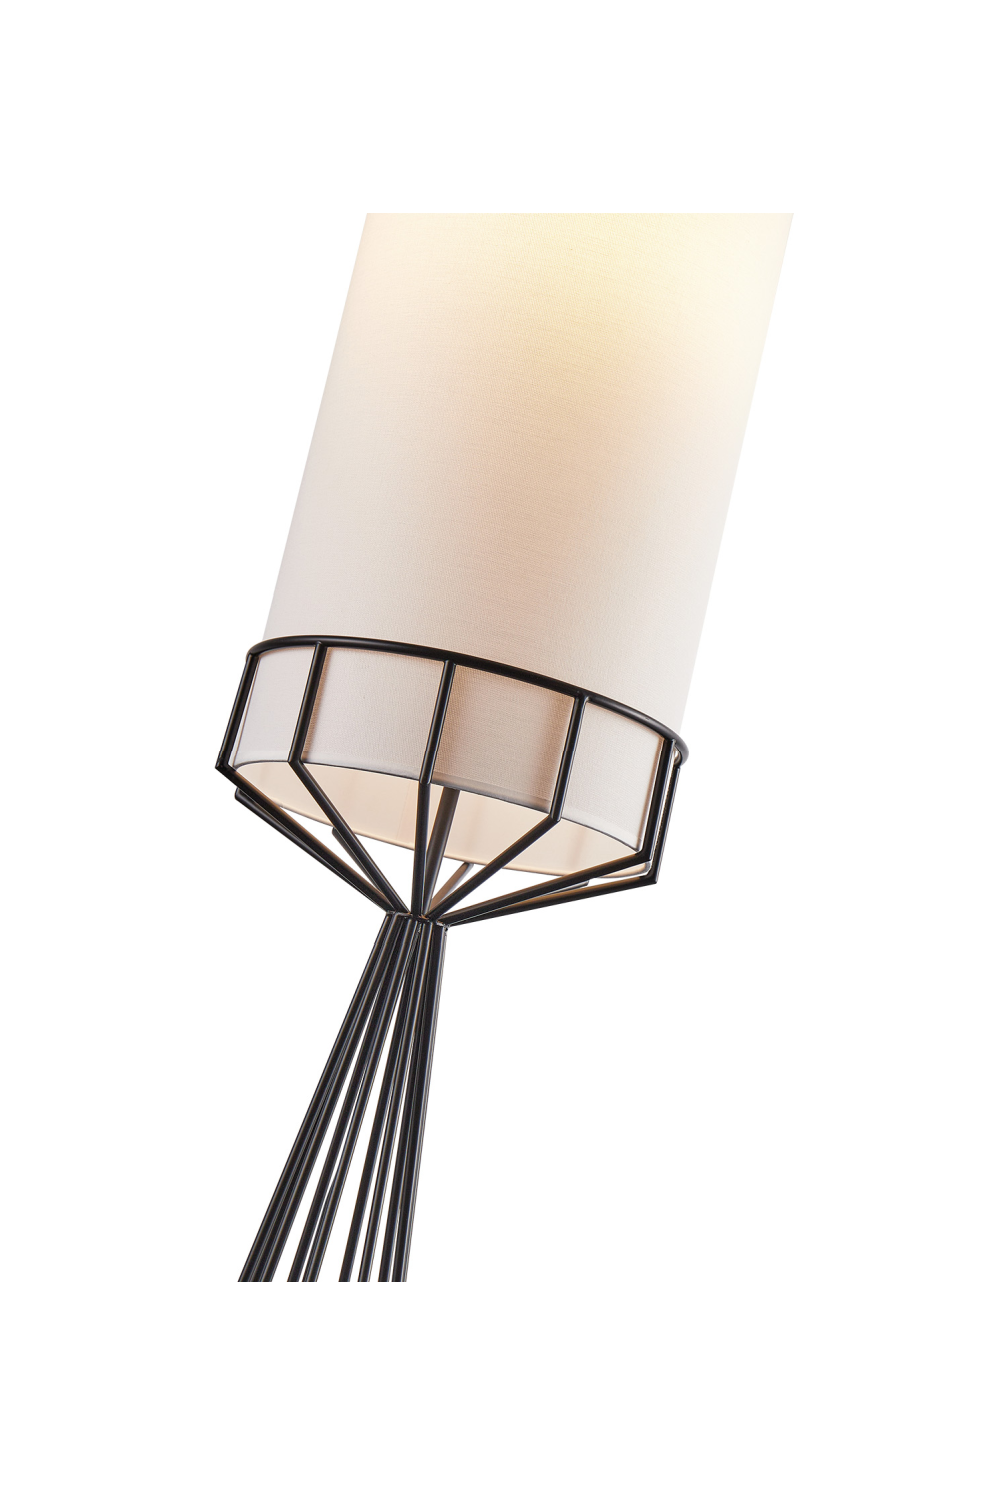 White Linen Tubular Floor Lamp | Liang & Eimil Faro | Oroa.com